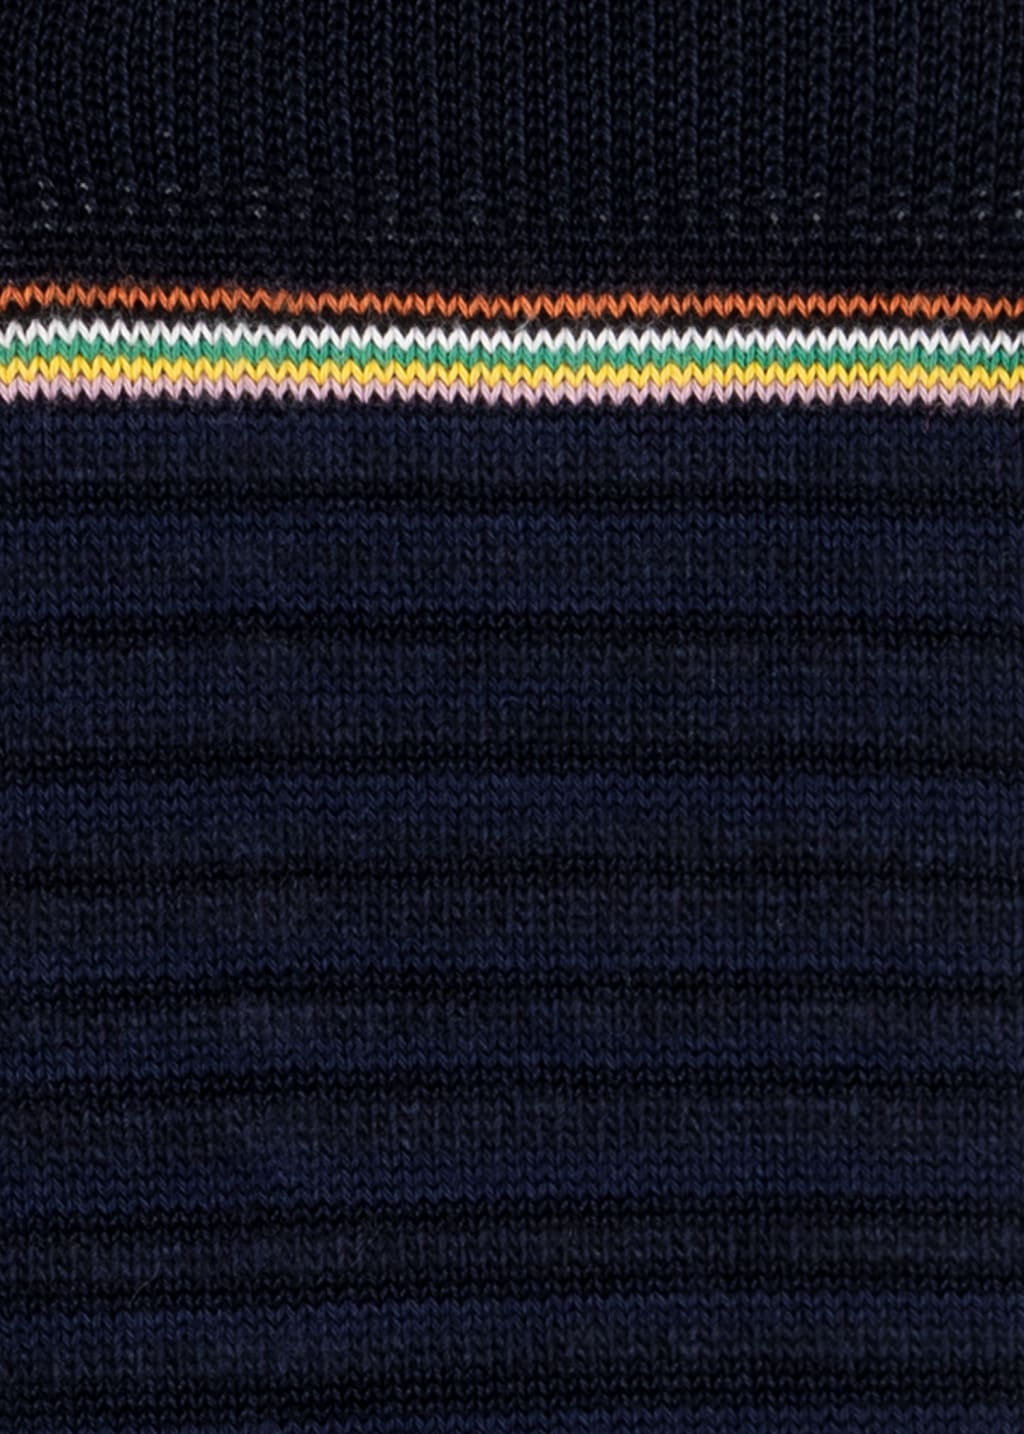 Detail View - Navy 'Shadow Stripe' Socks Paul Smith